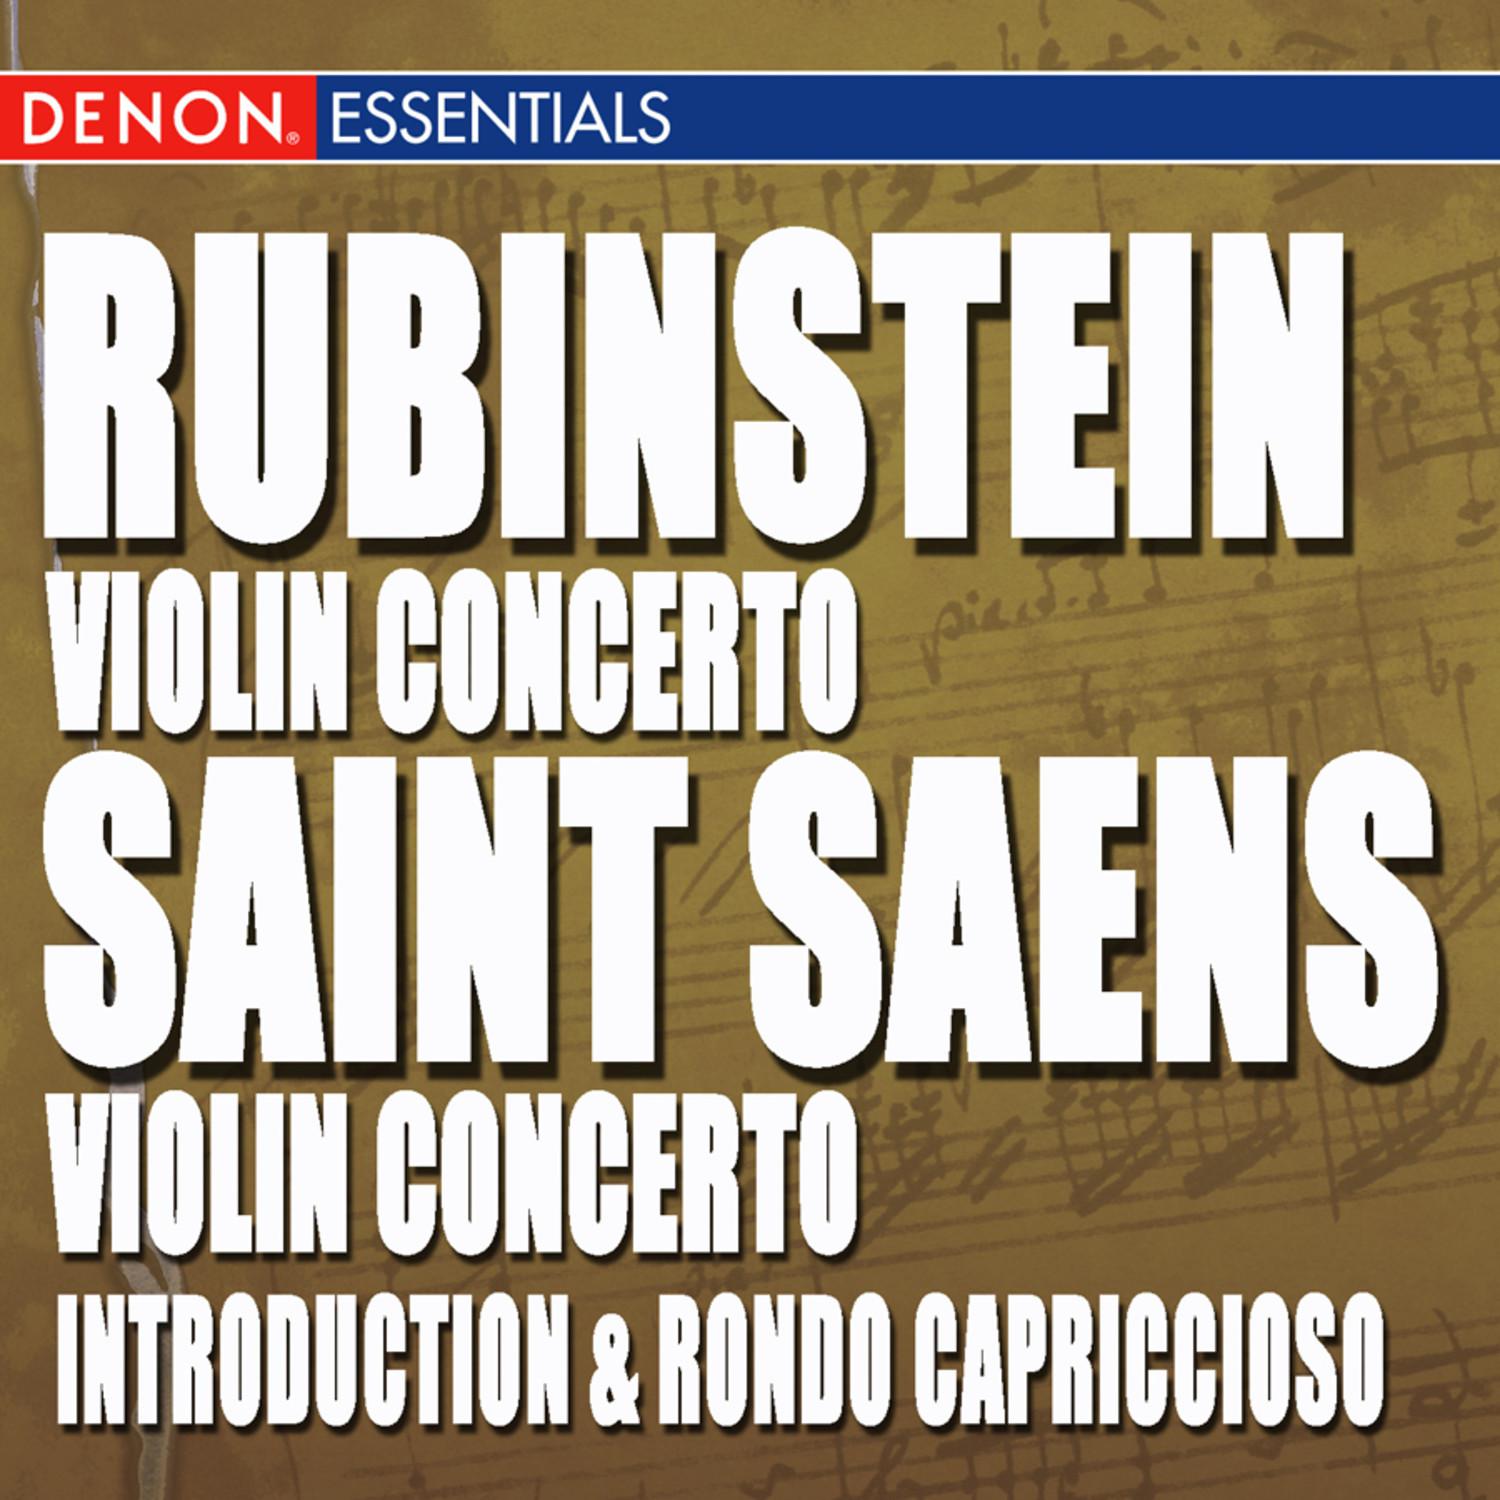 Concerto for Violin & Orchestra in G Major, Op. 46: I. Moderato assai